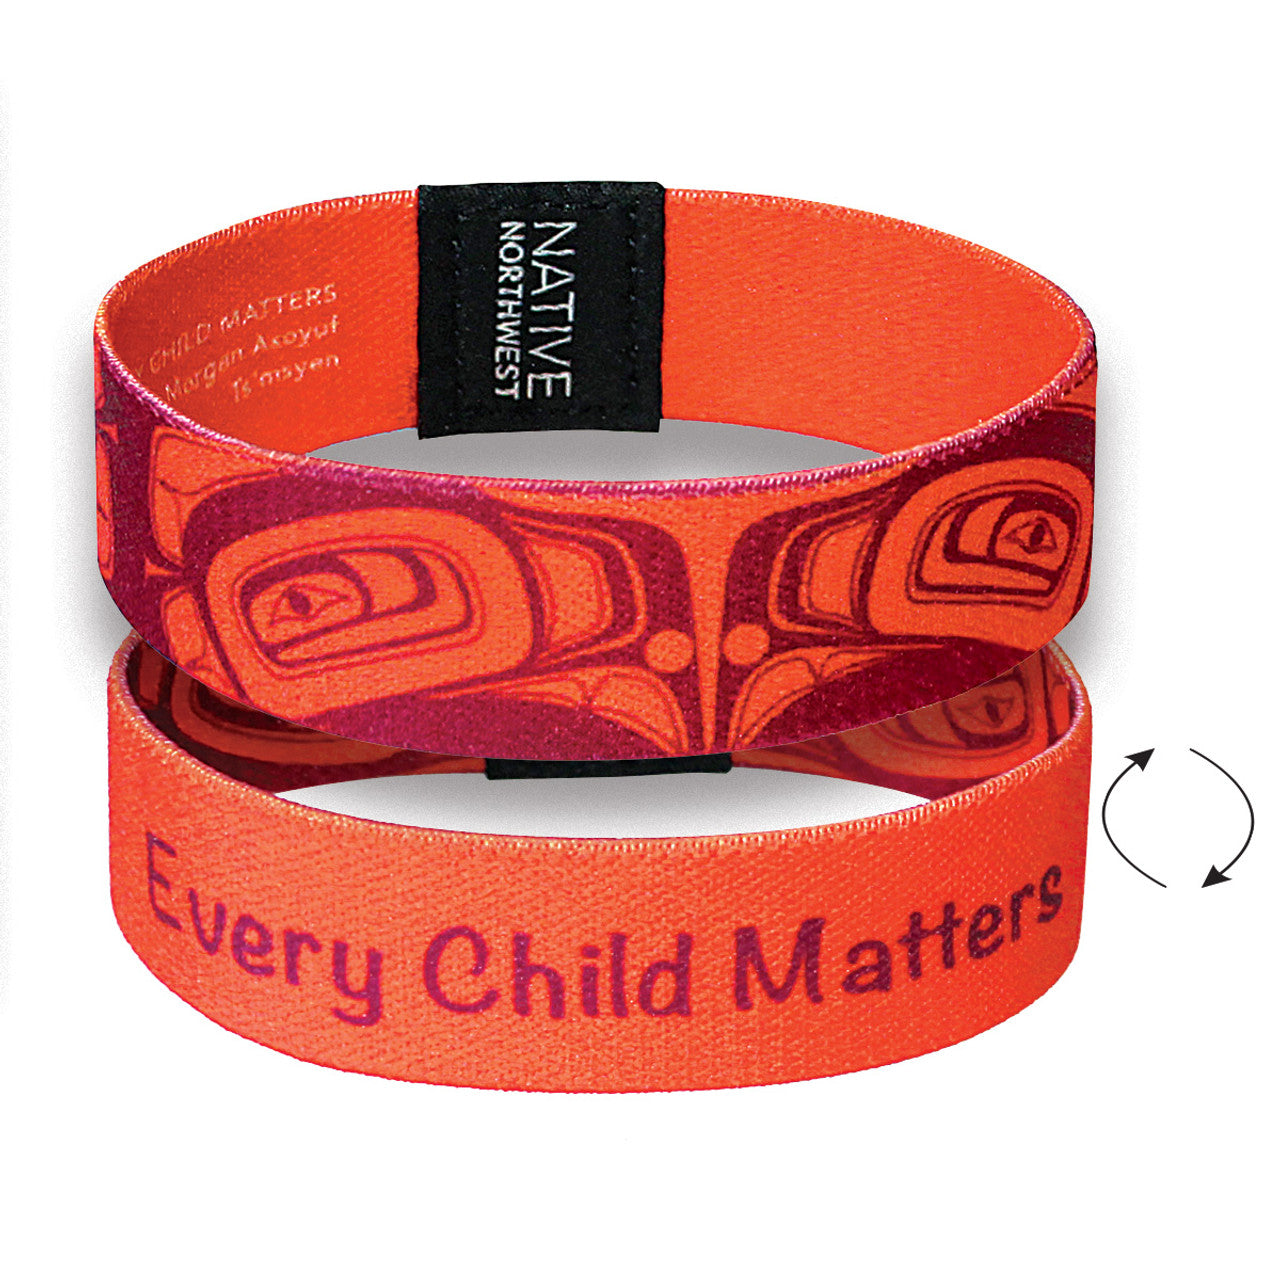 Every Child Matters Wristband